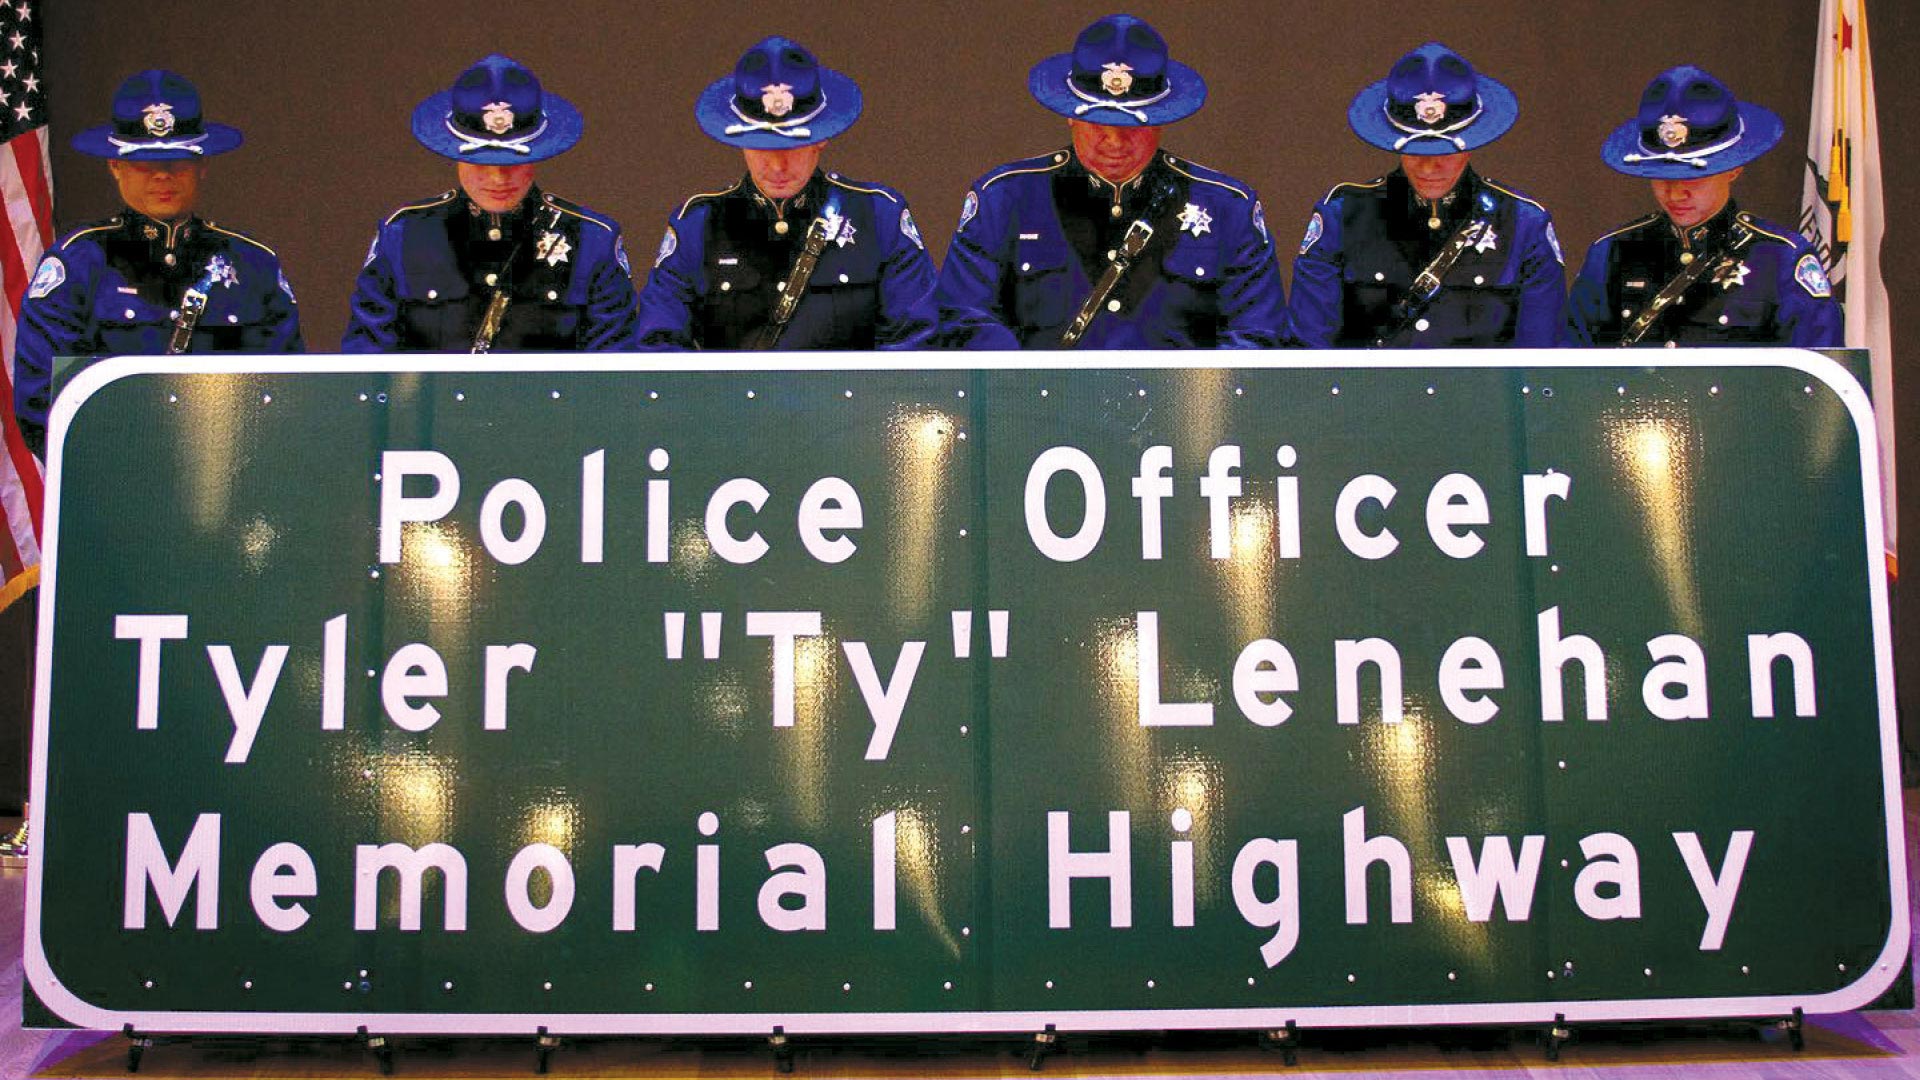 remembering-local-heroes-lenehan-1-highway-99